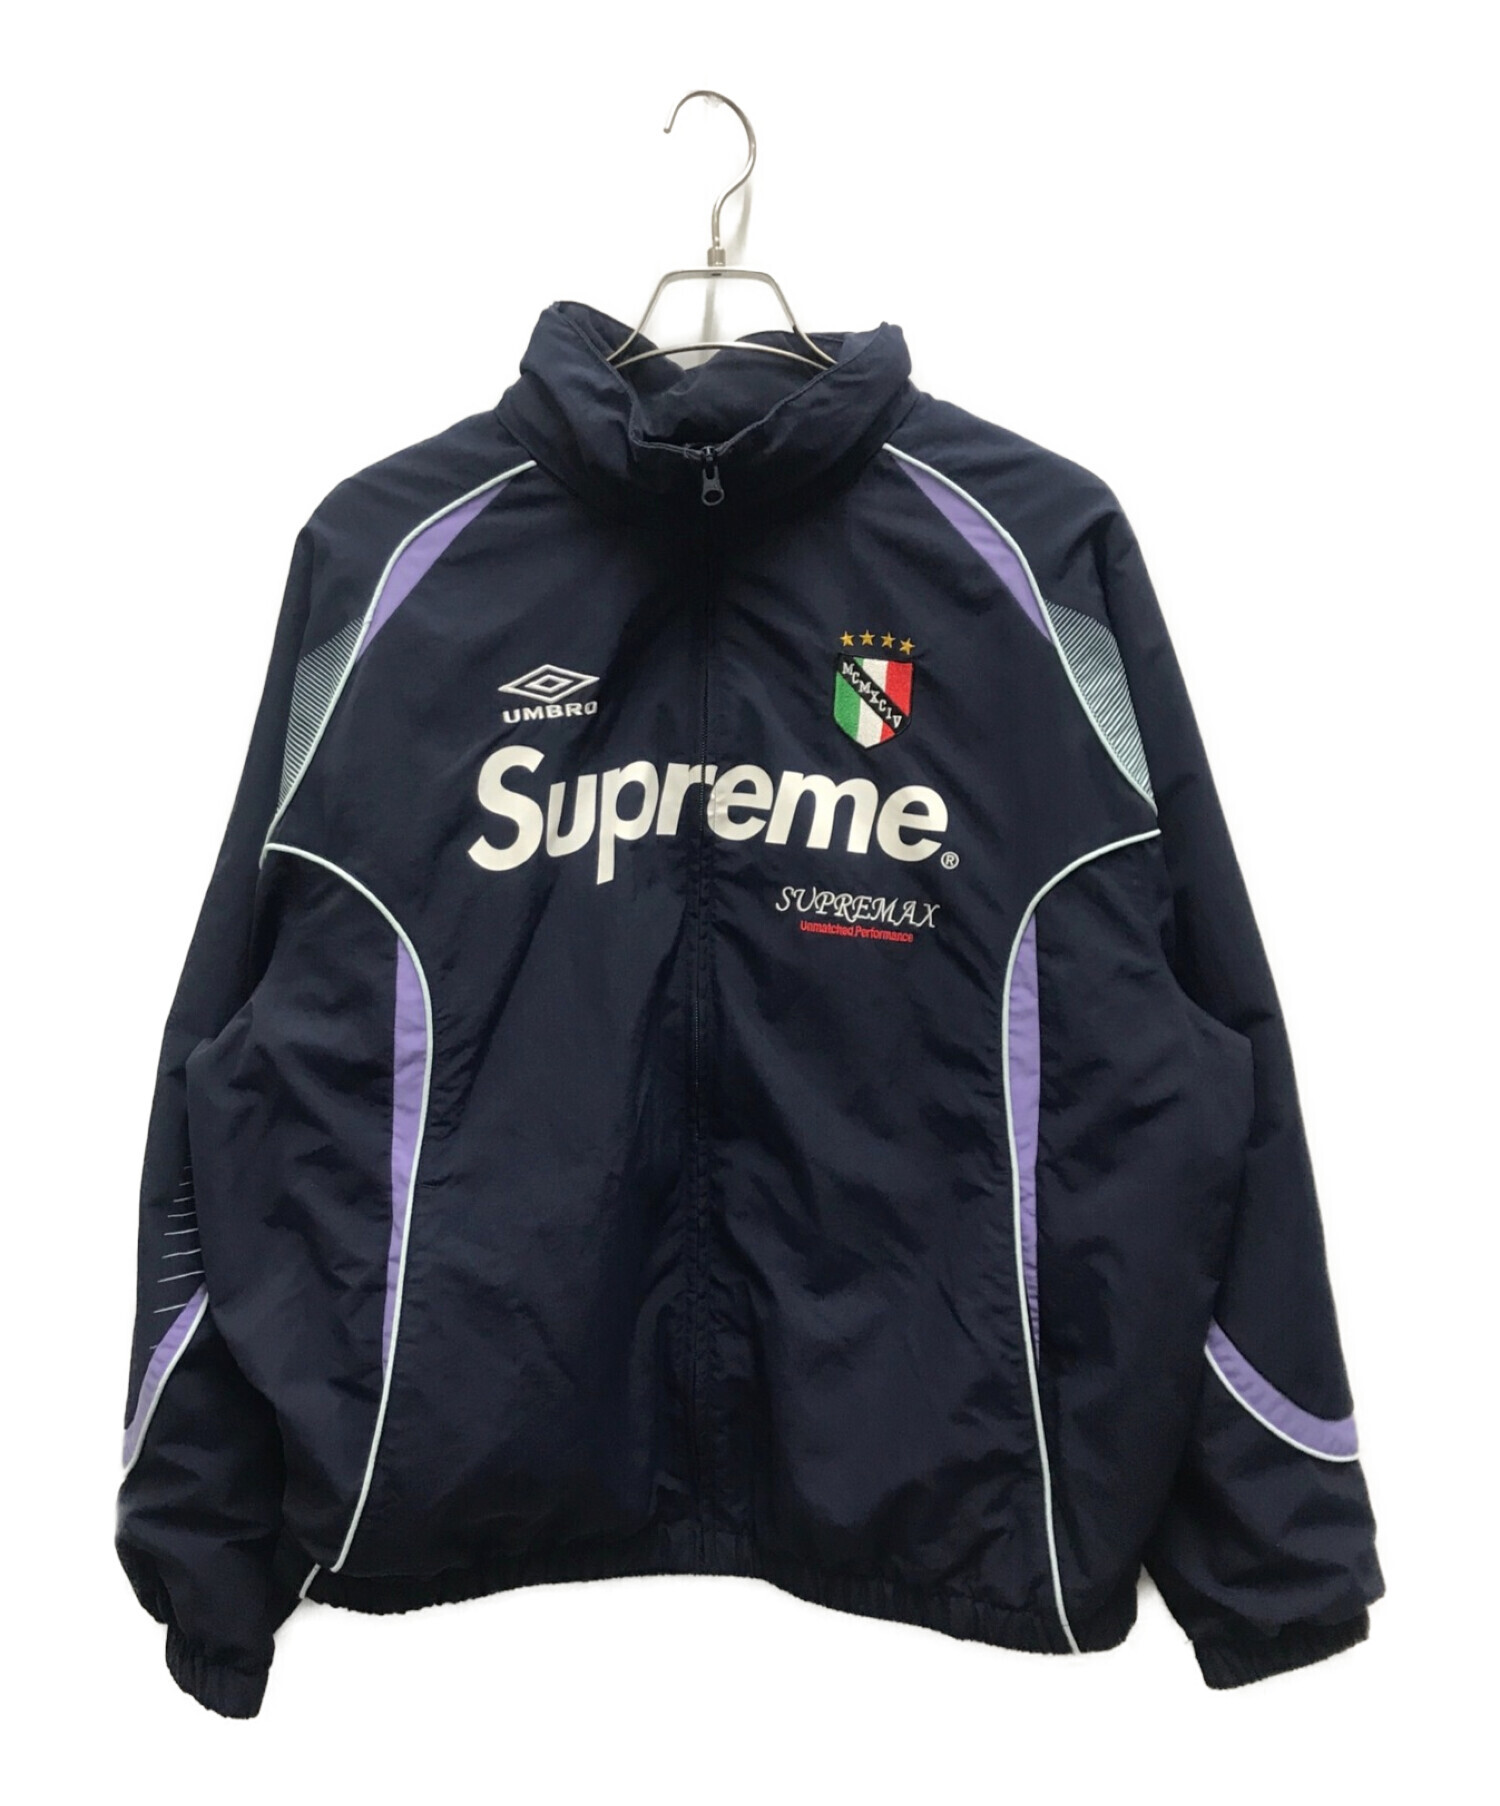 supreme 20ss track jacket Lサイズ - www.sorbillomenu.com